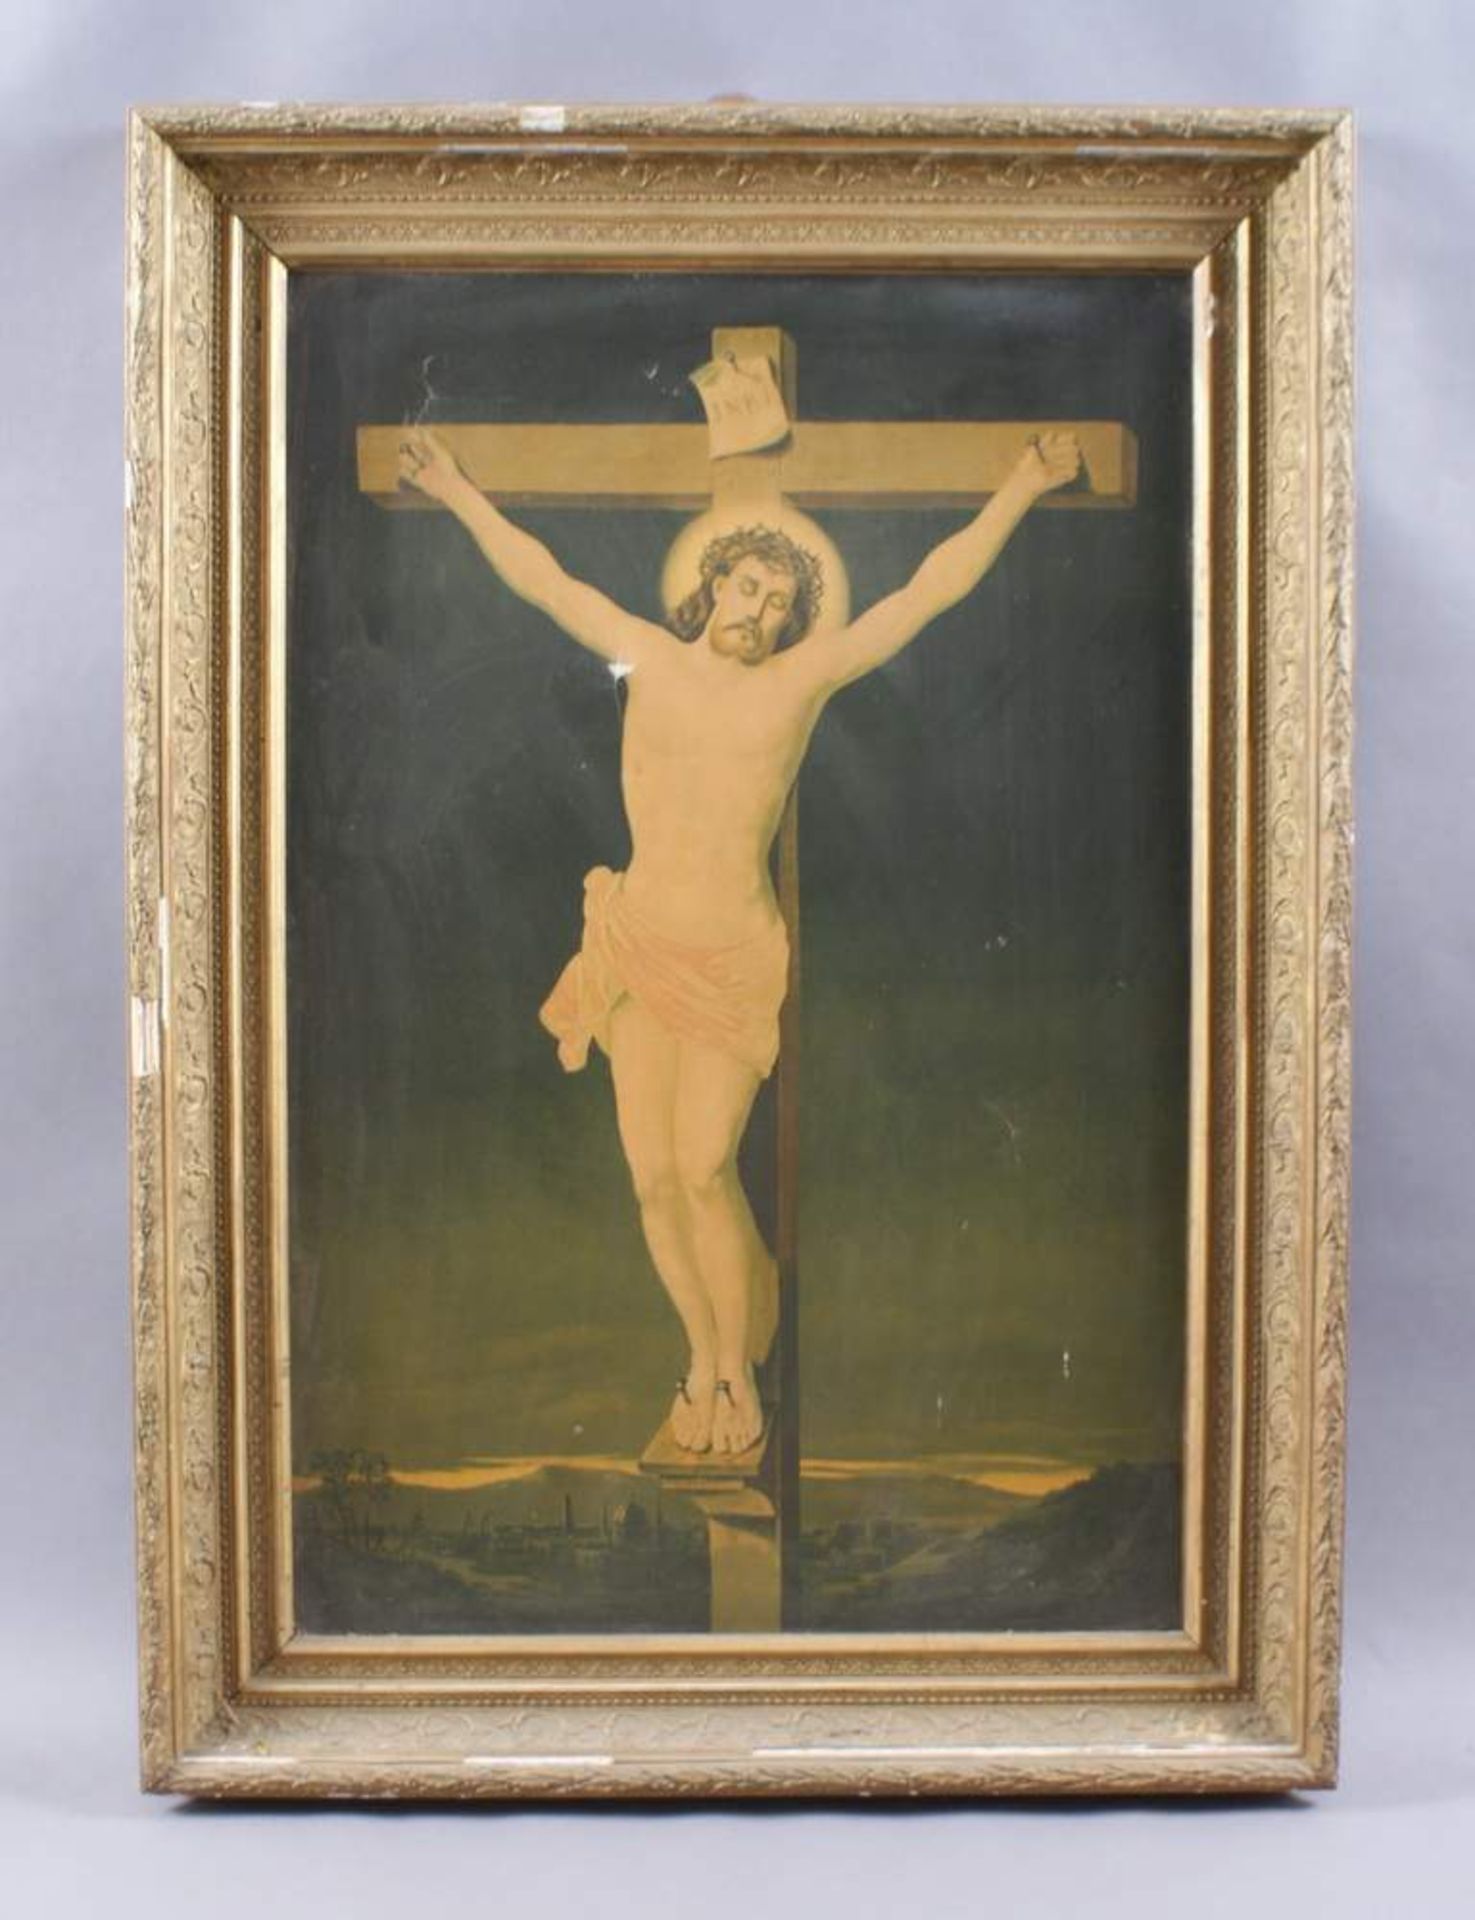 RAHMENHolz geschnitzt und gold, mit Druck des Christus am Kreuz, besch., o. R. H 78 x B 52 cm, m. R.